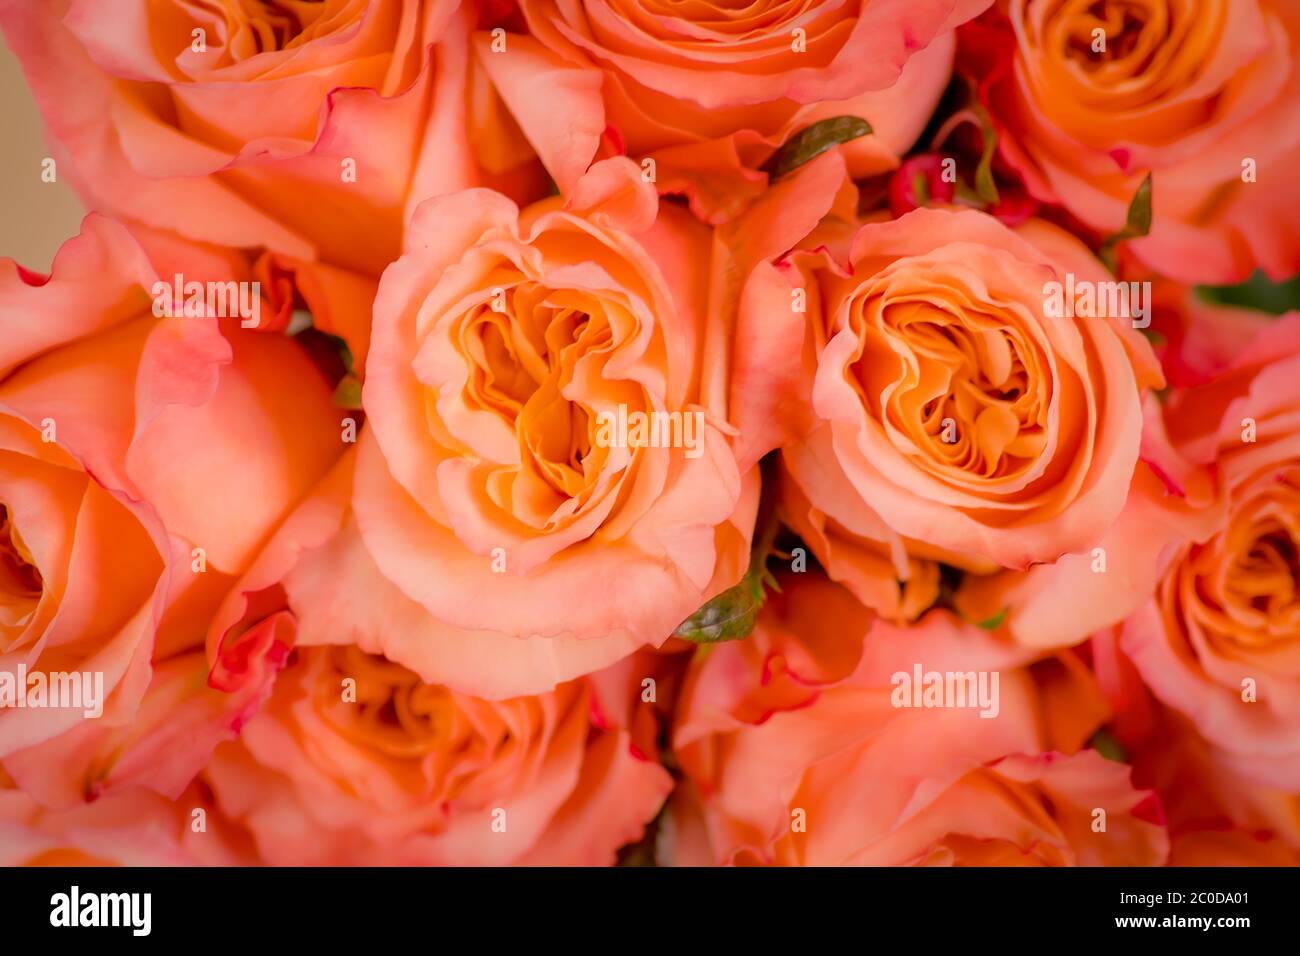 Gros plan macro de la variété de roses Shimmer pêche, prise de vue en studio. Banque D'Images